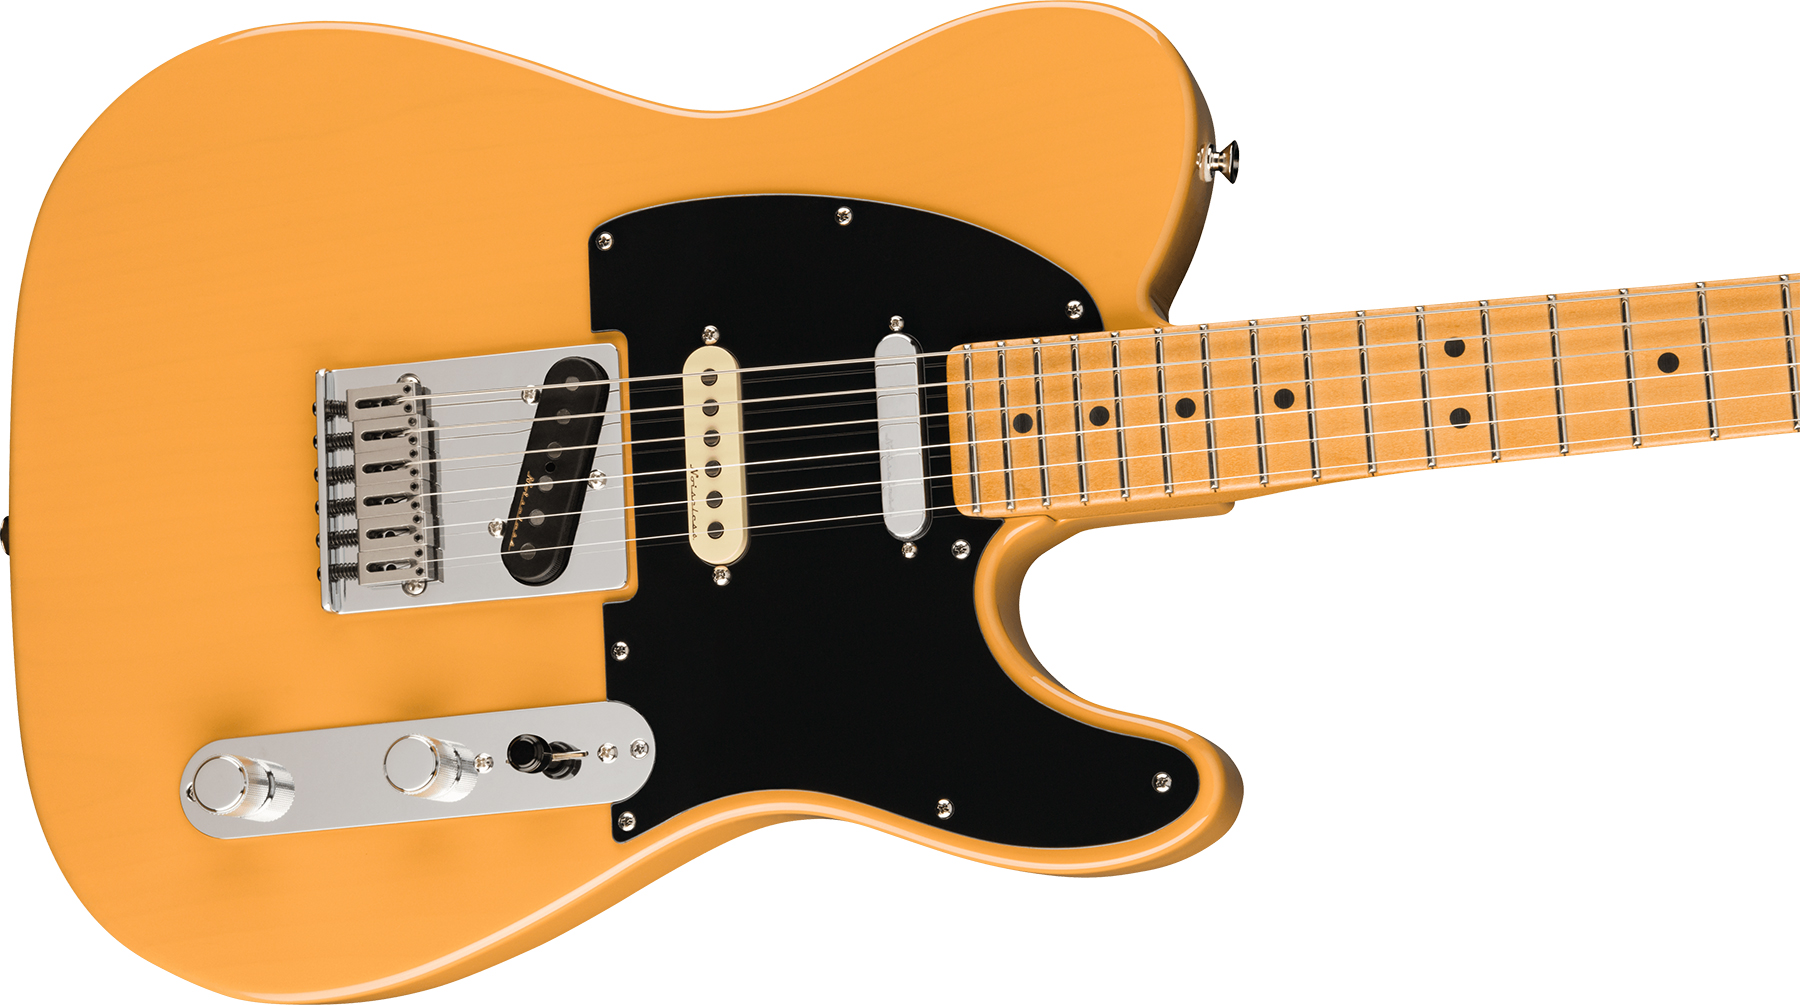 Fender Tele Player Plus Nashville Mex 3s Ht Mn - Butterscotch Blonde - Tel shape electric guitar - Variation 2